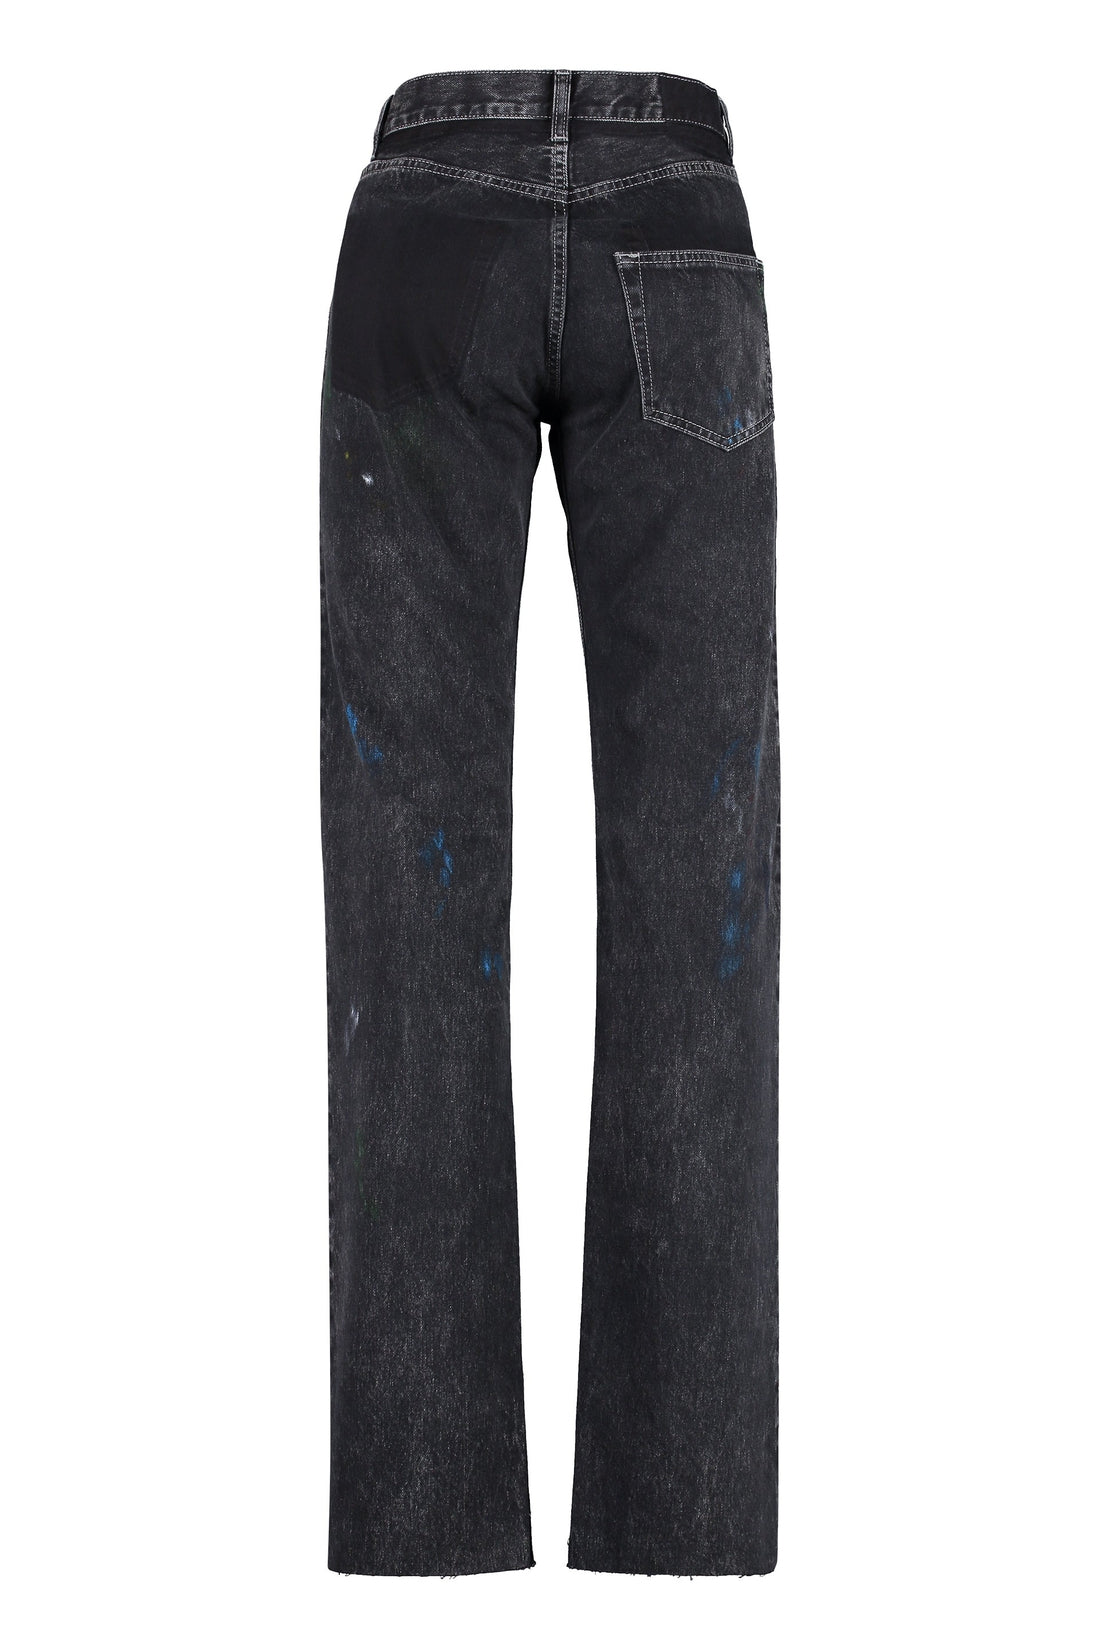 Maison Margiela-OUTLET-SALE-Straight leg jeans-ARCHIVIST